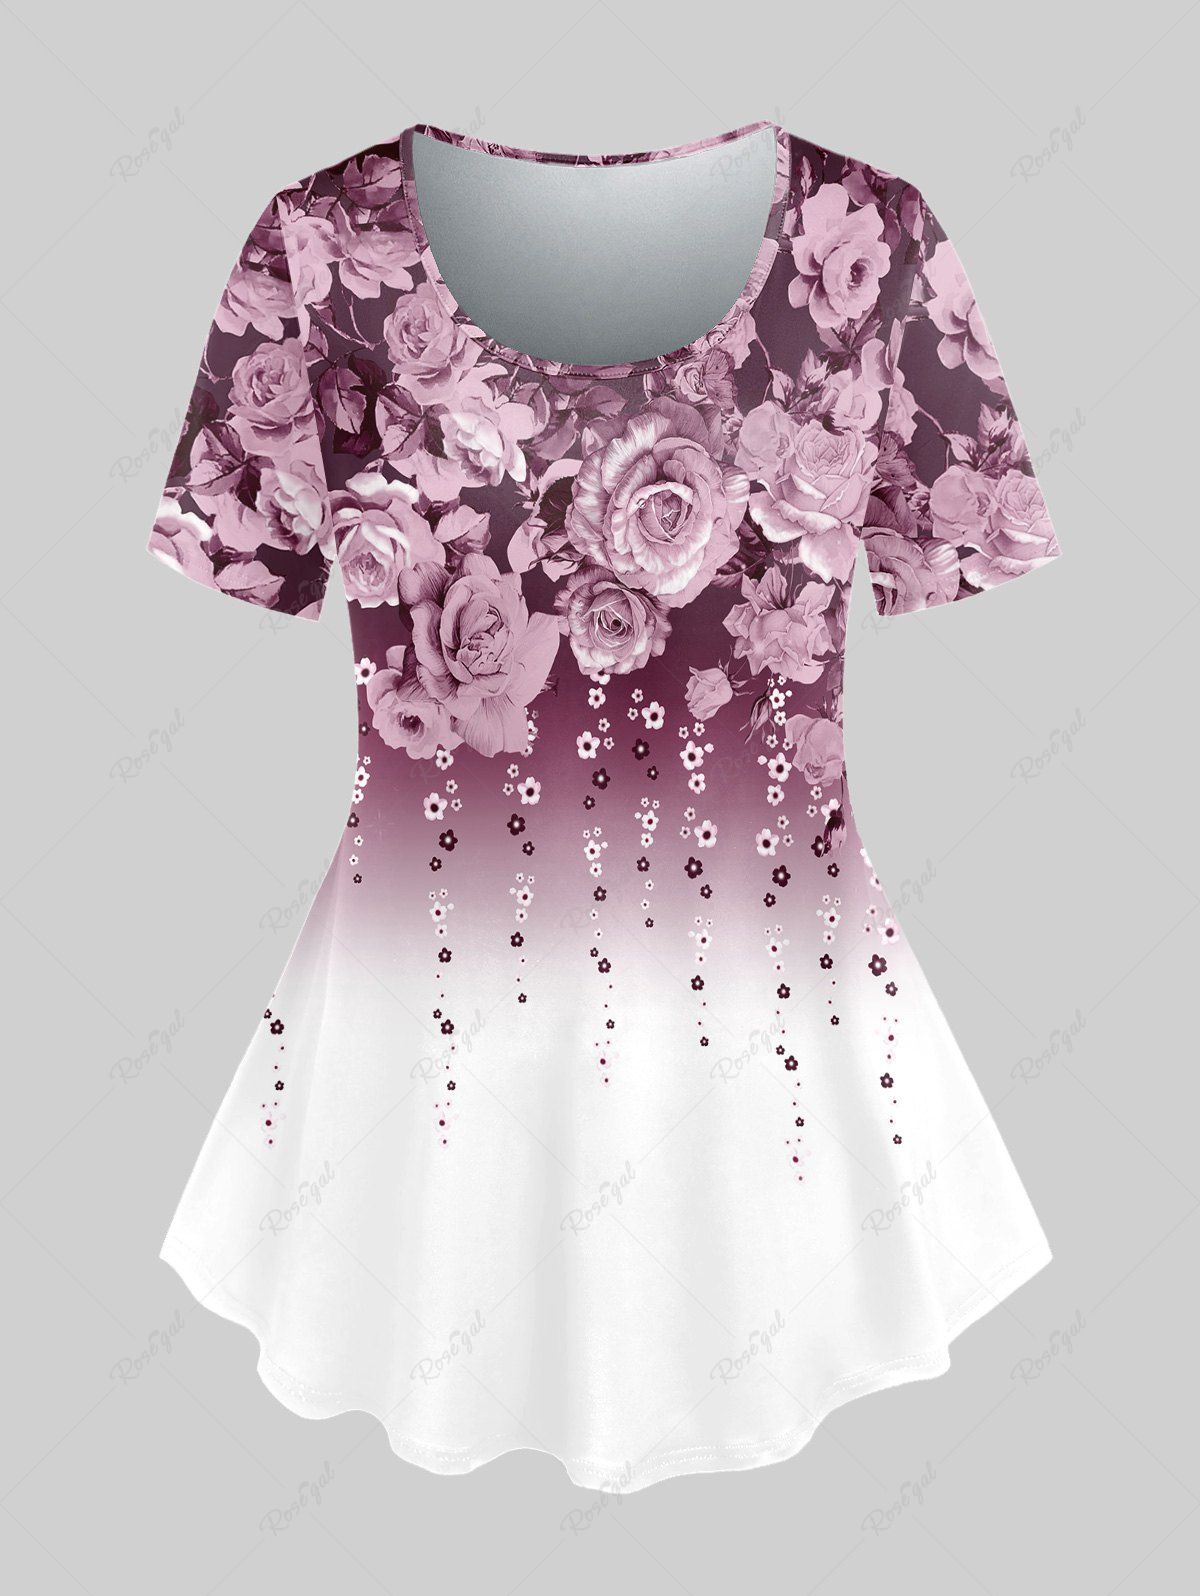 T-shirt Floral Imprimé de Grande Taille Rose clair 5x | US 30-32